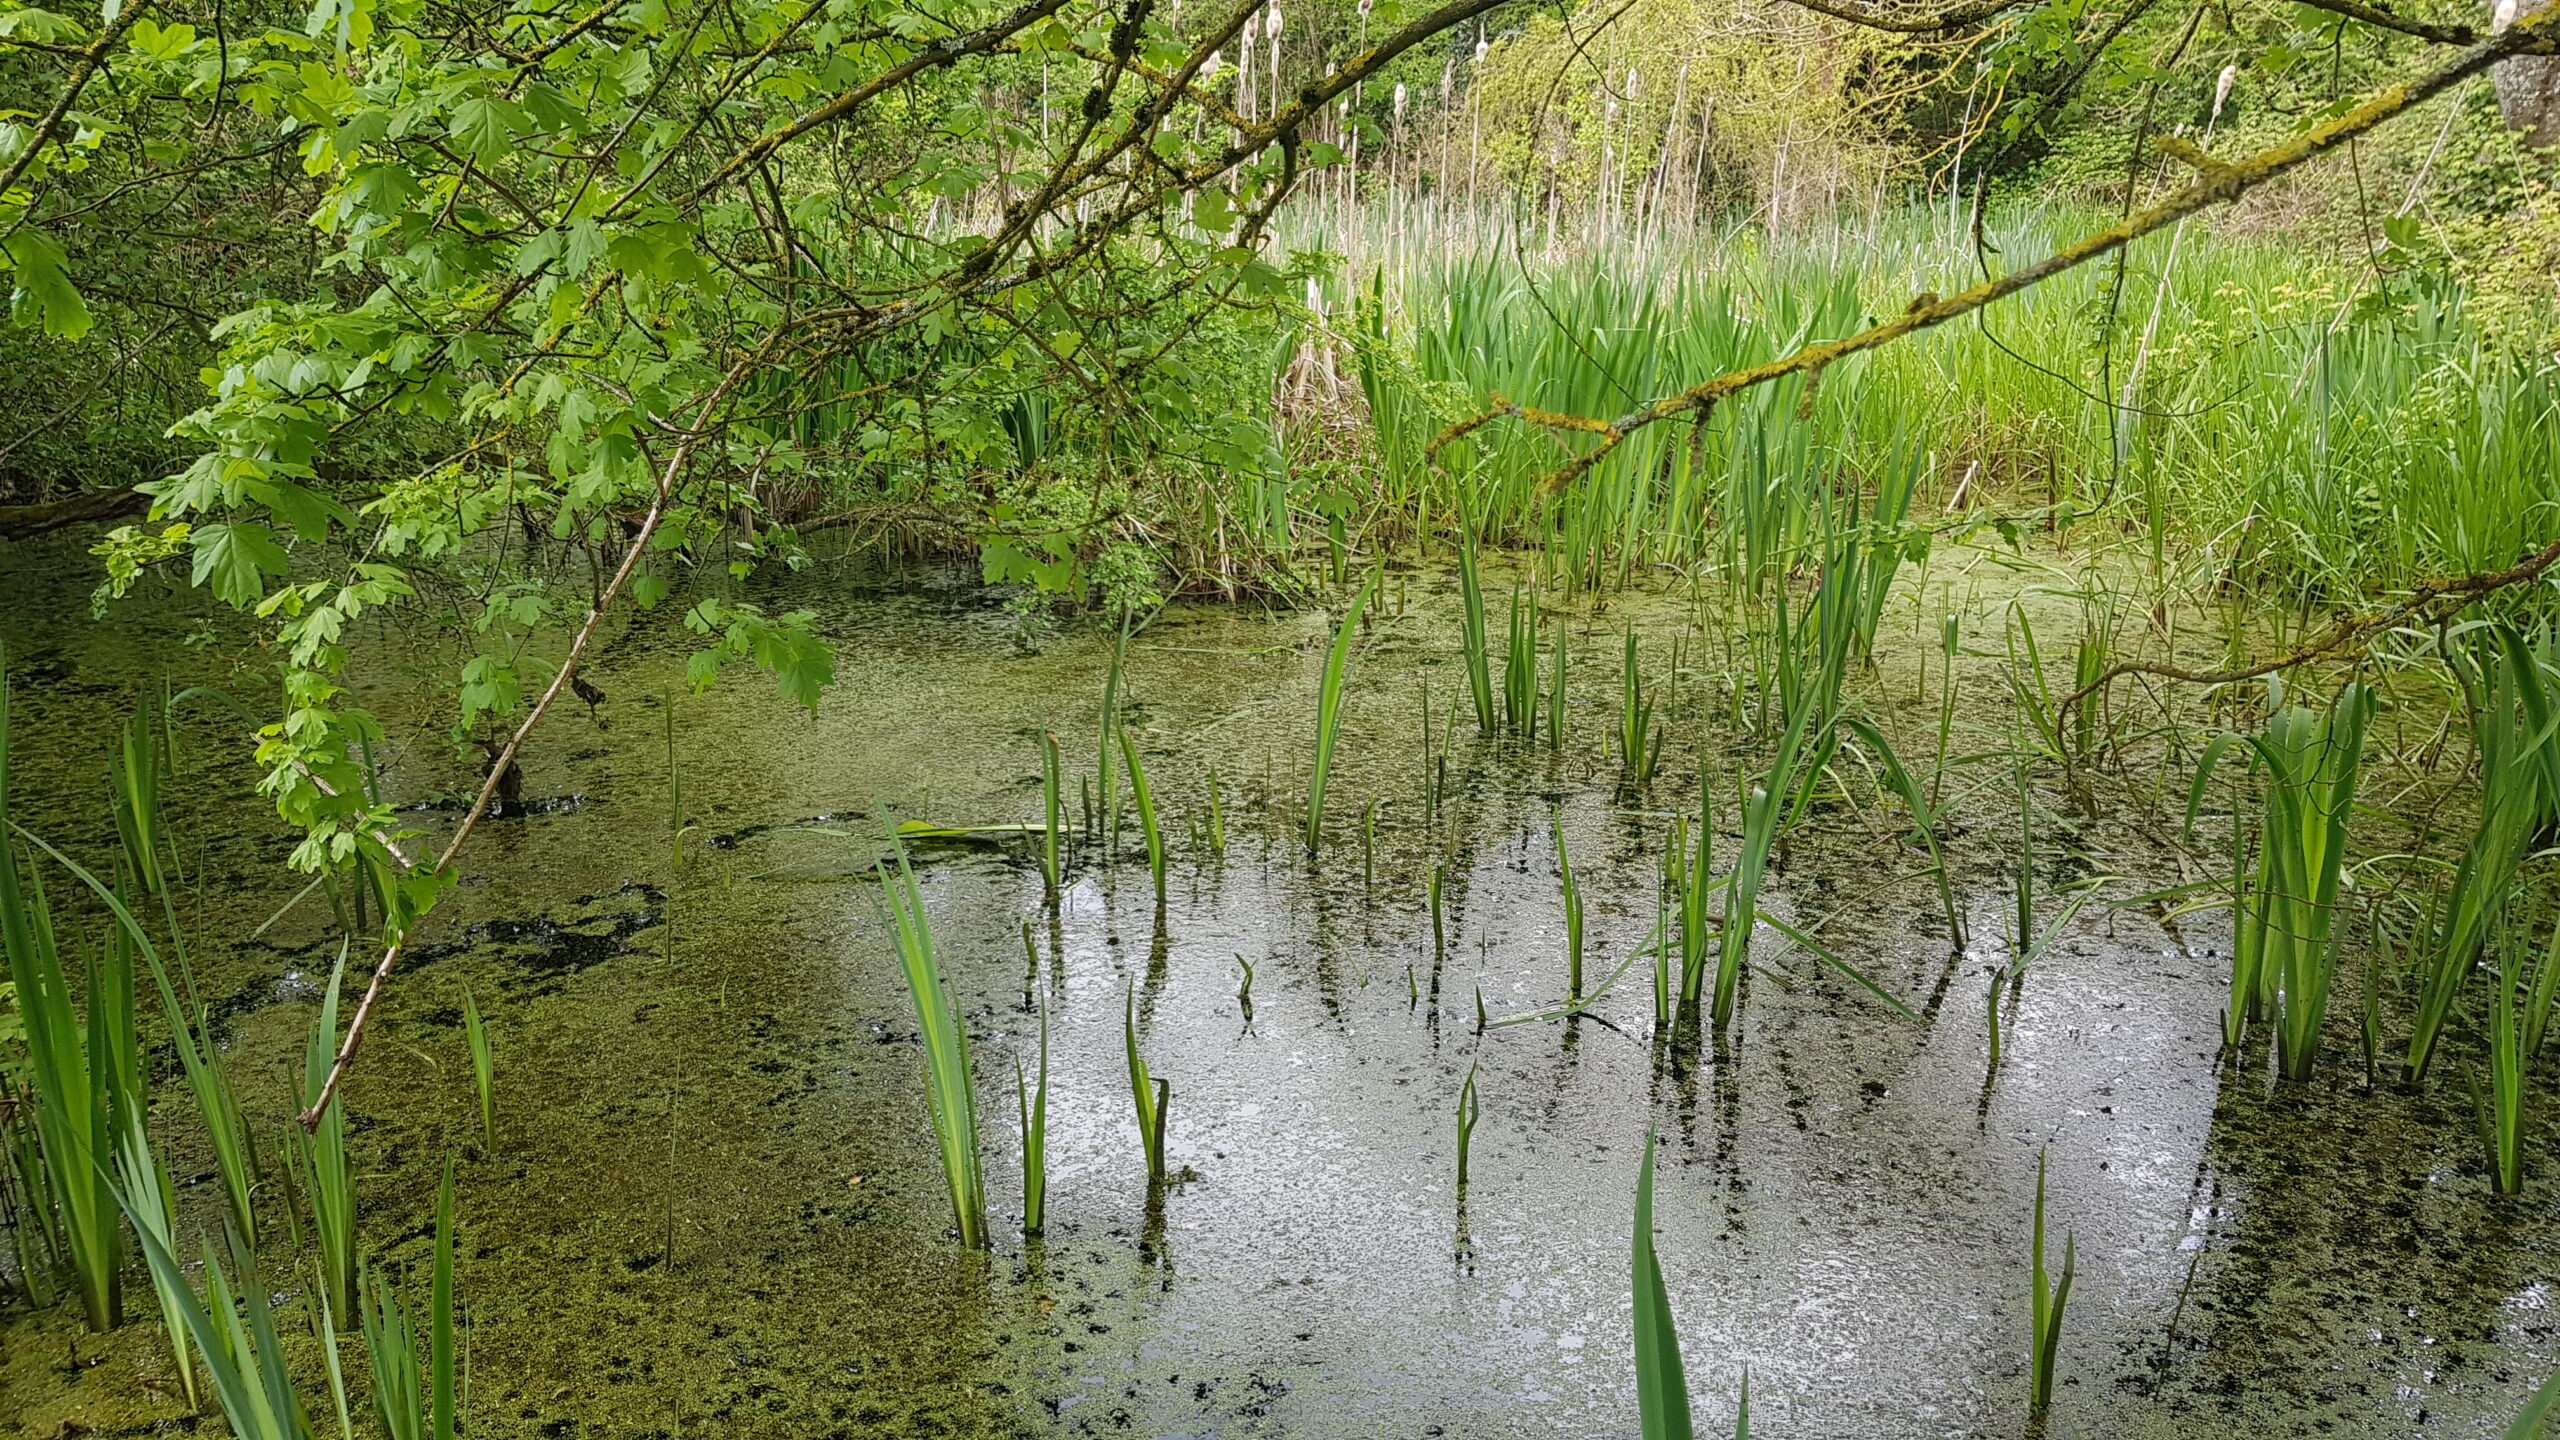 Heritage pond at Lullingstone